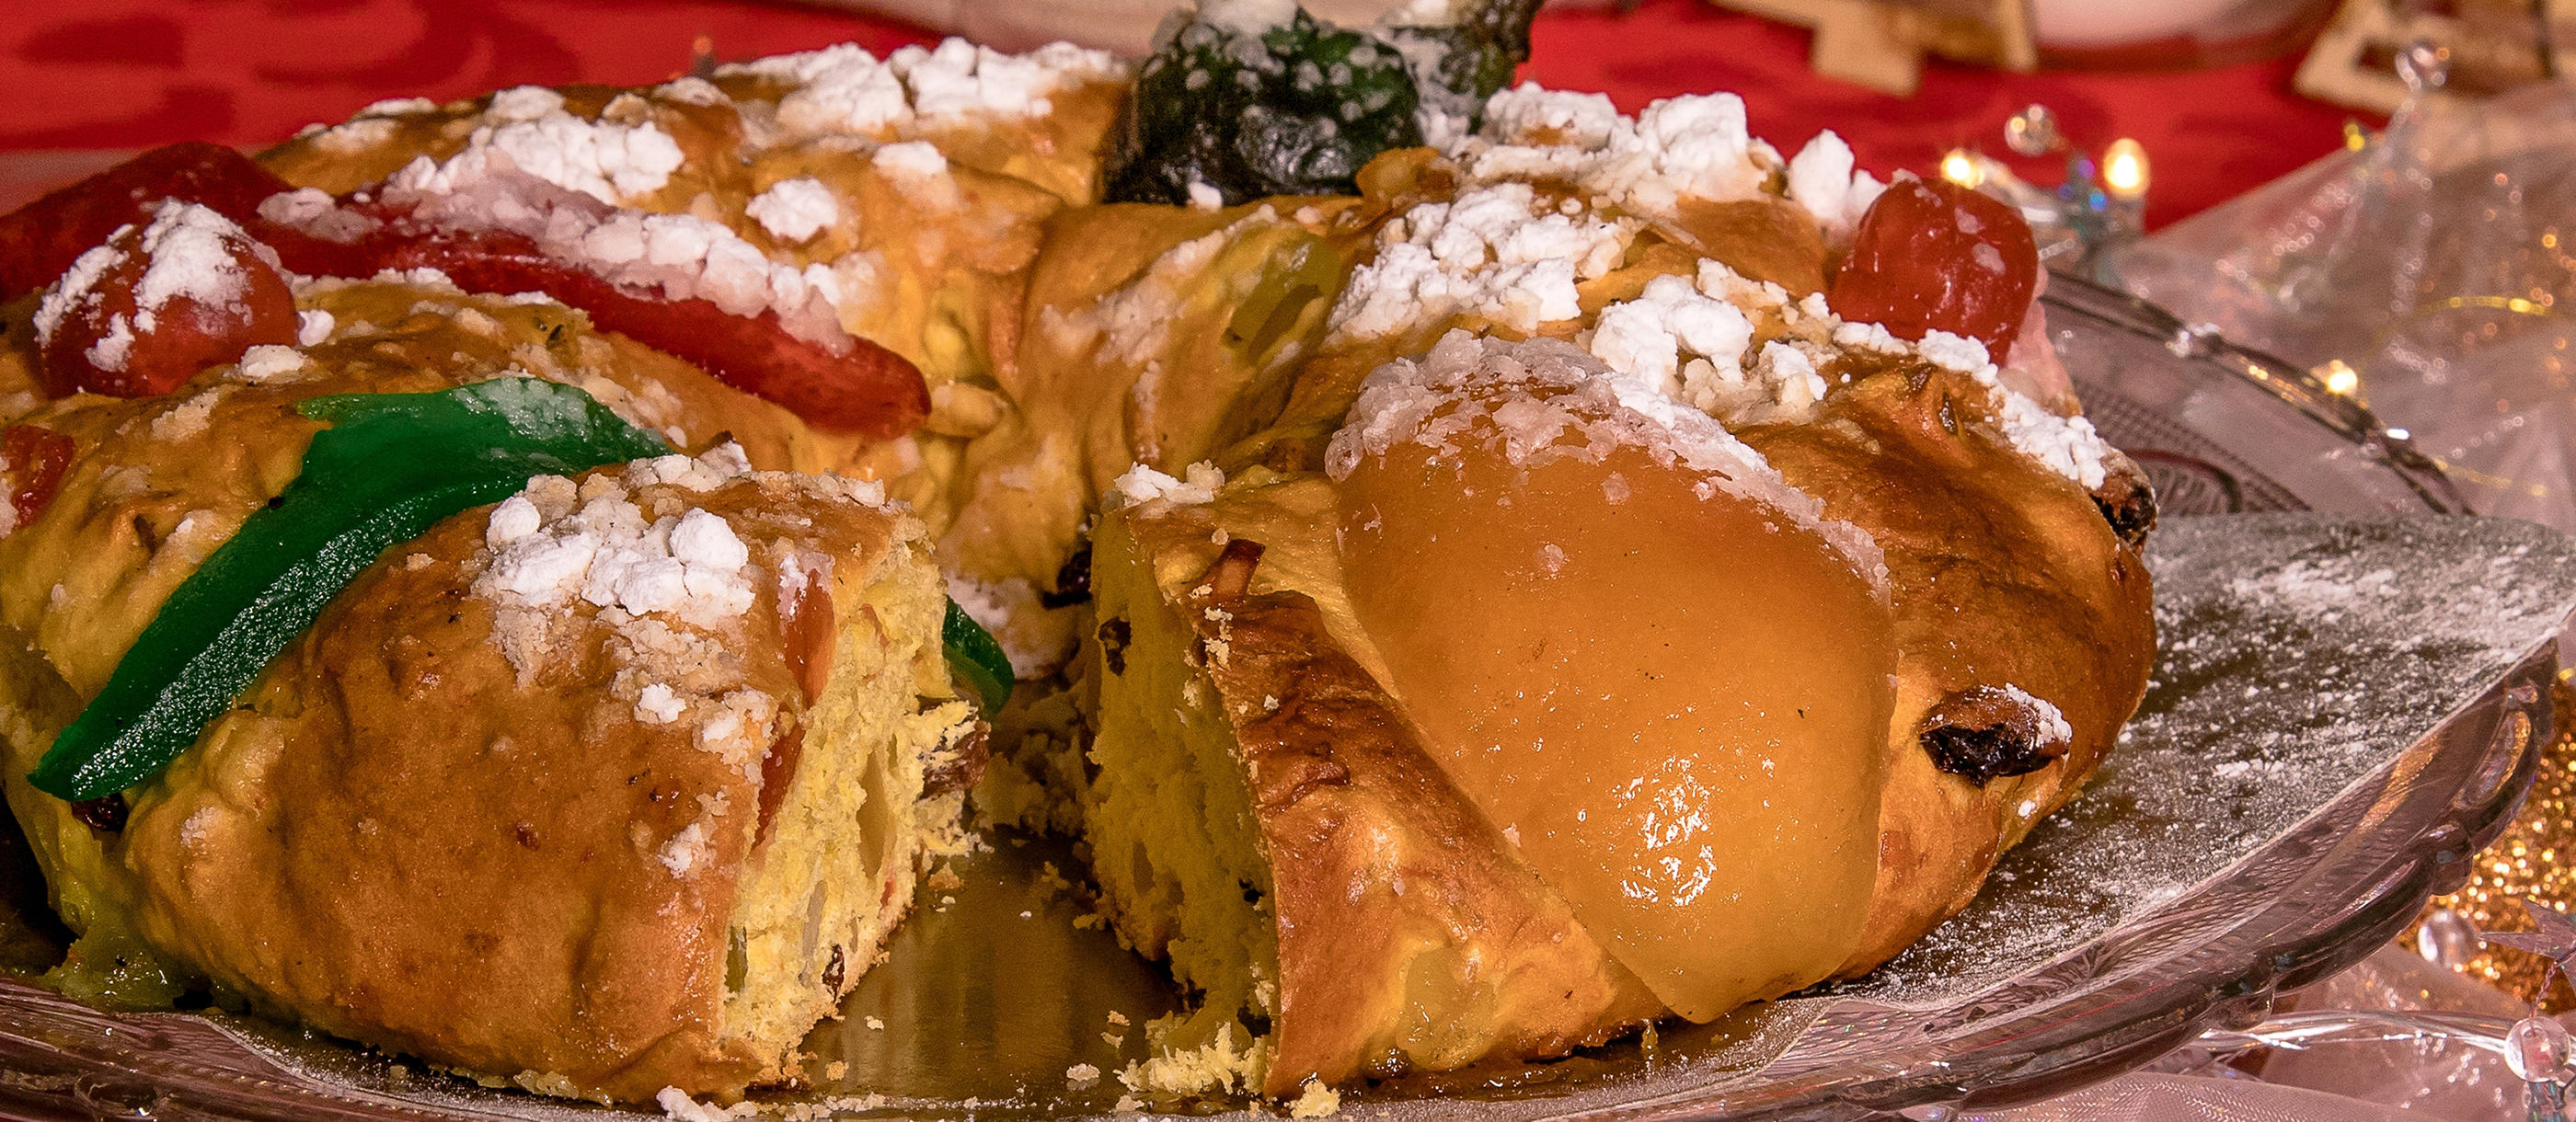 Bolo Rei & Bolo Rainha - Best Portuguese Christmas Cakes